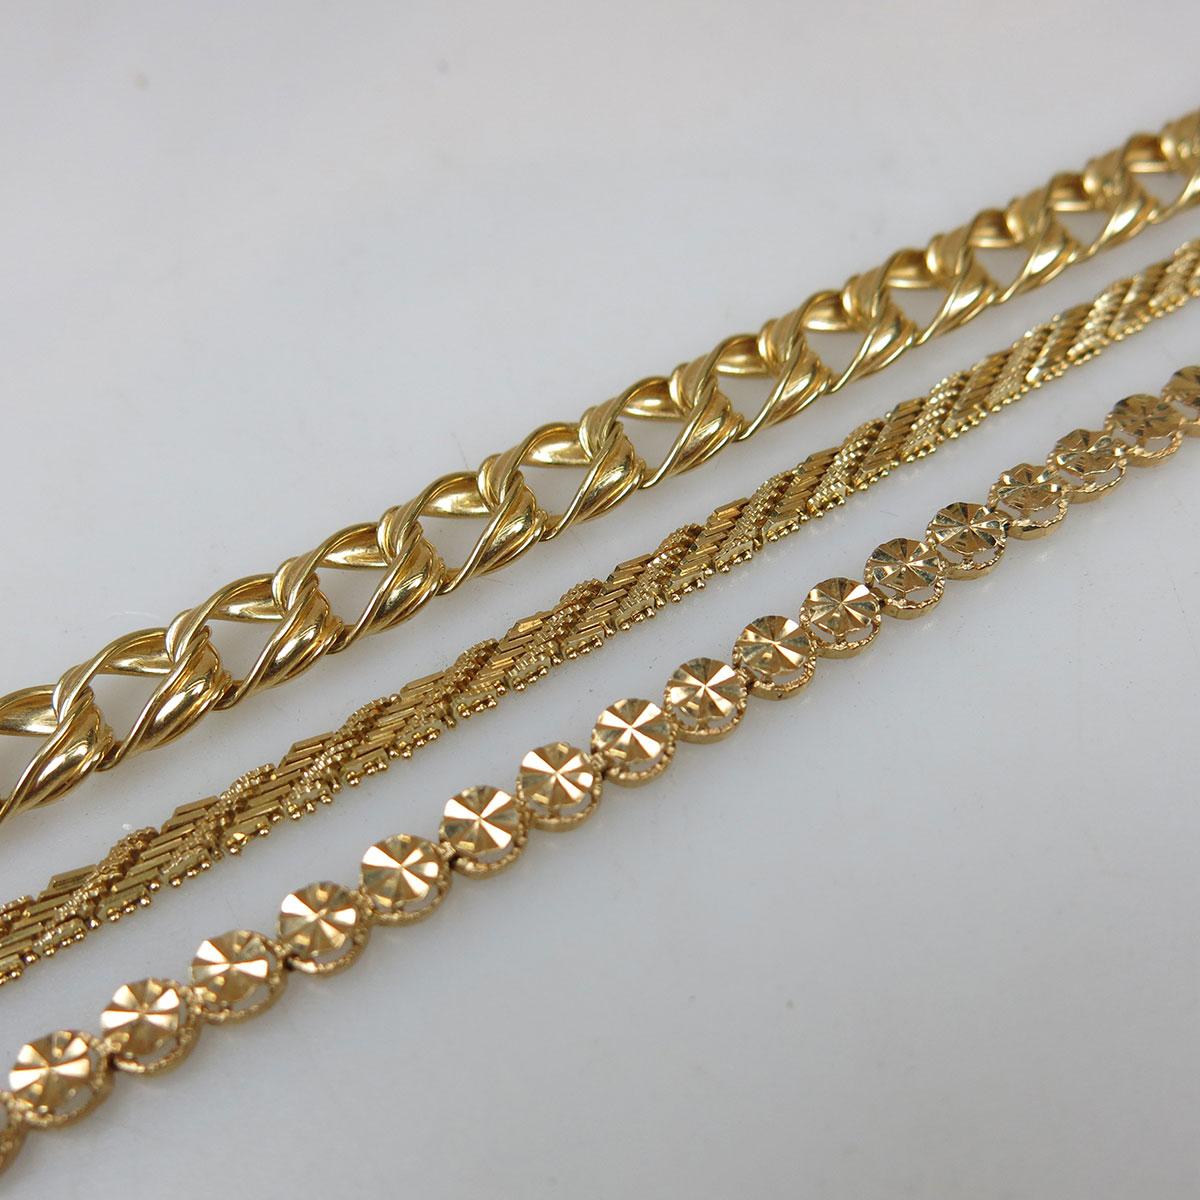 3 x 14k Yellow Gold Bracelets